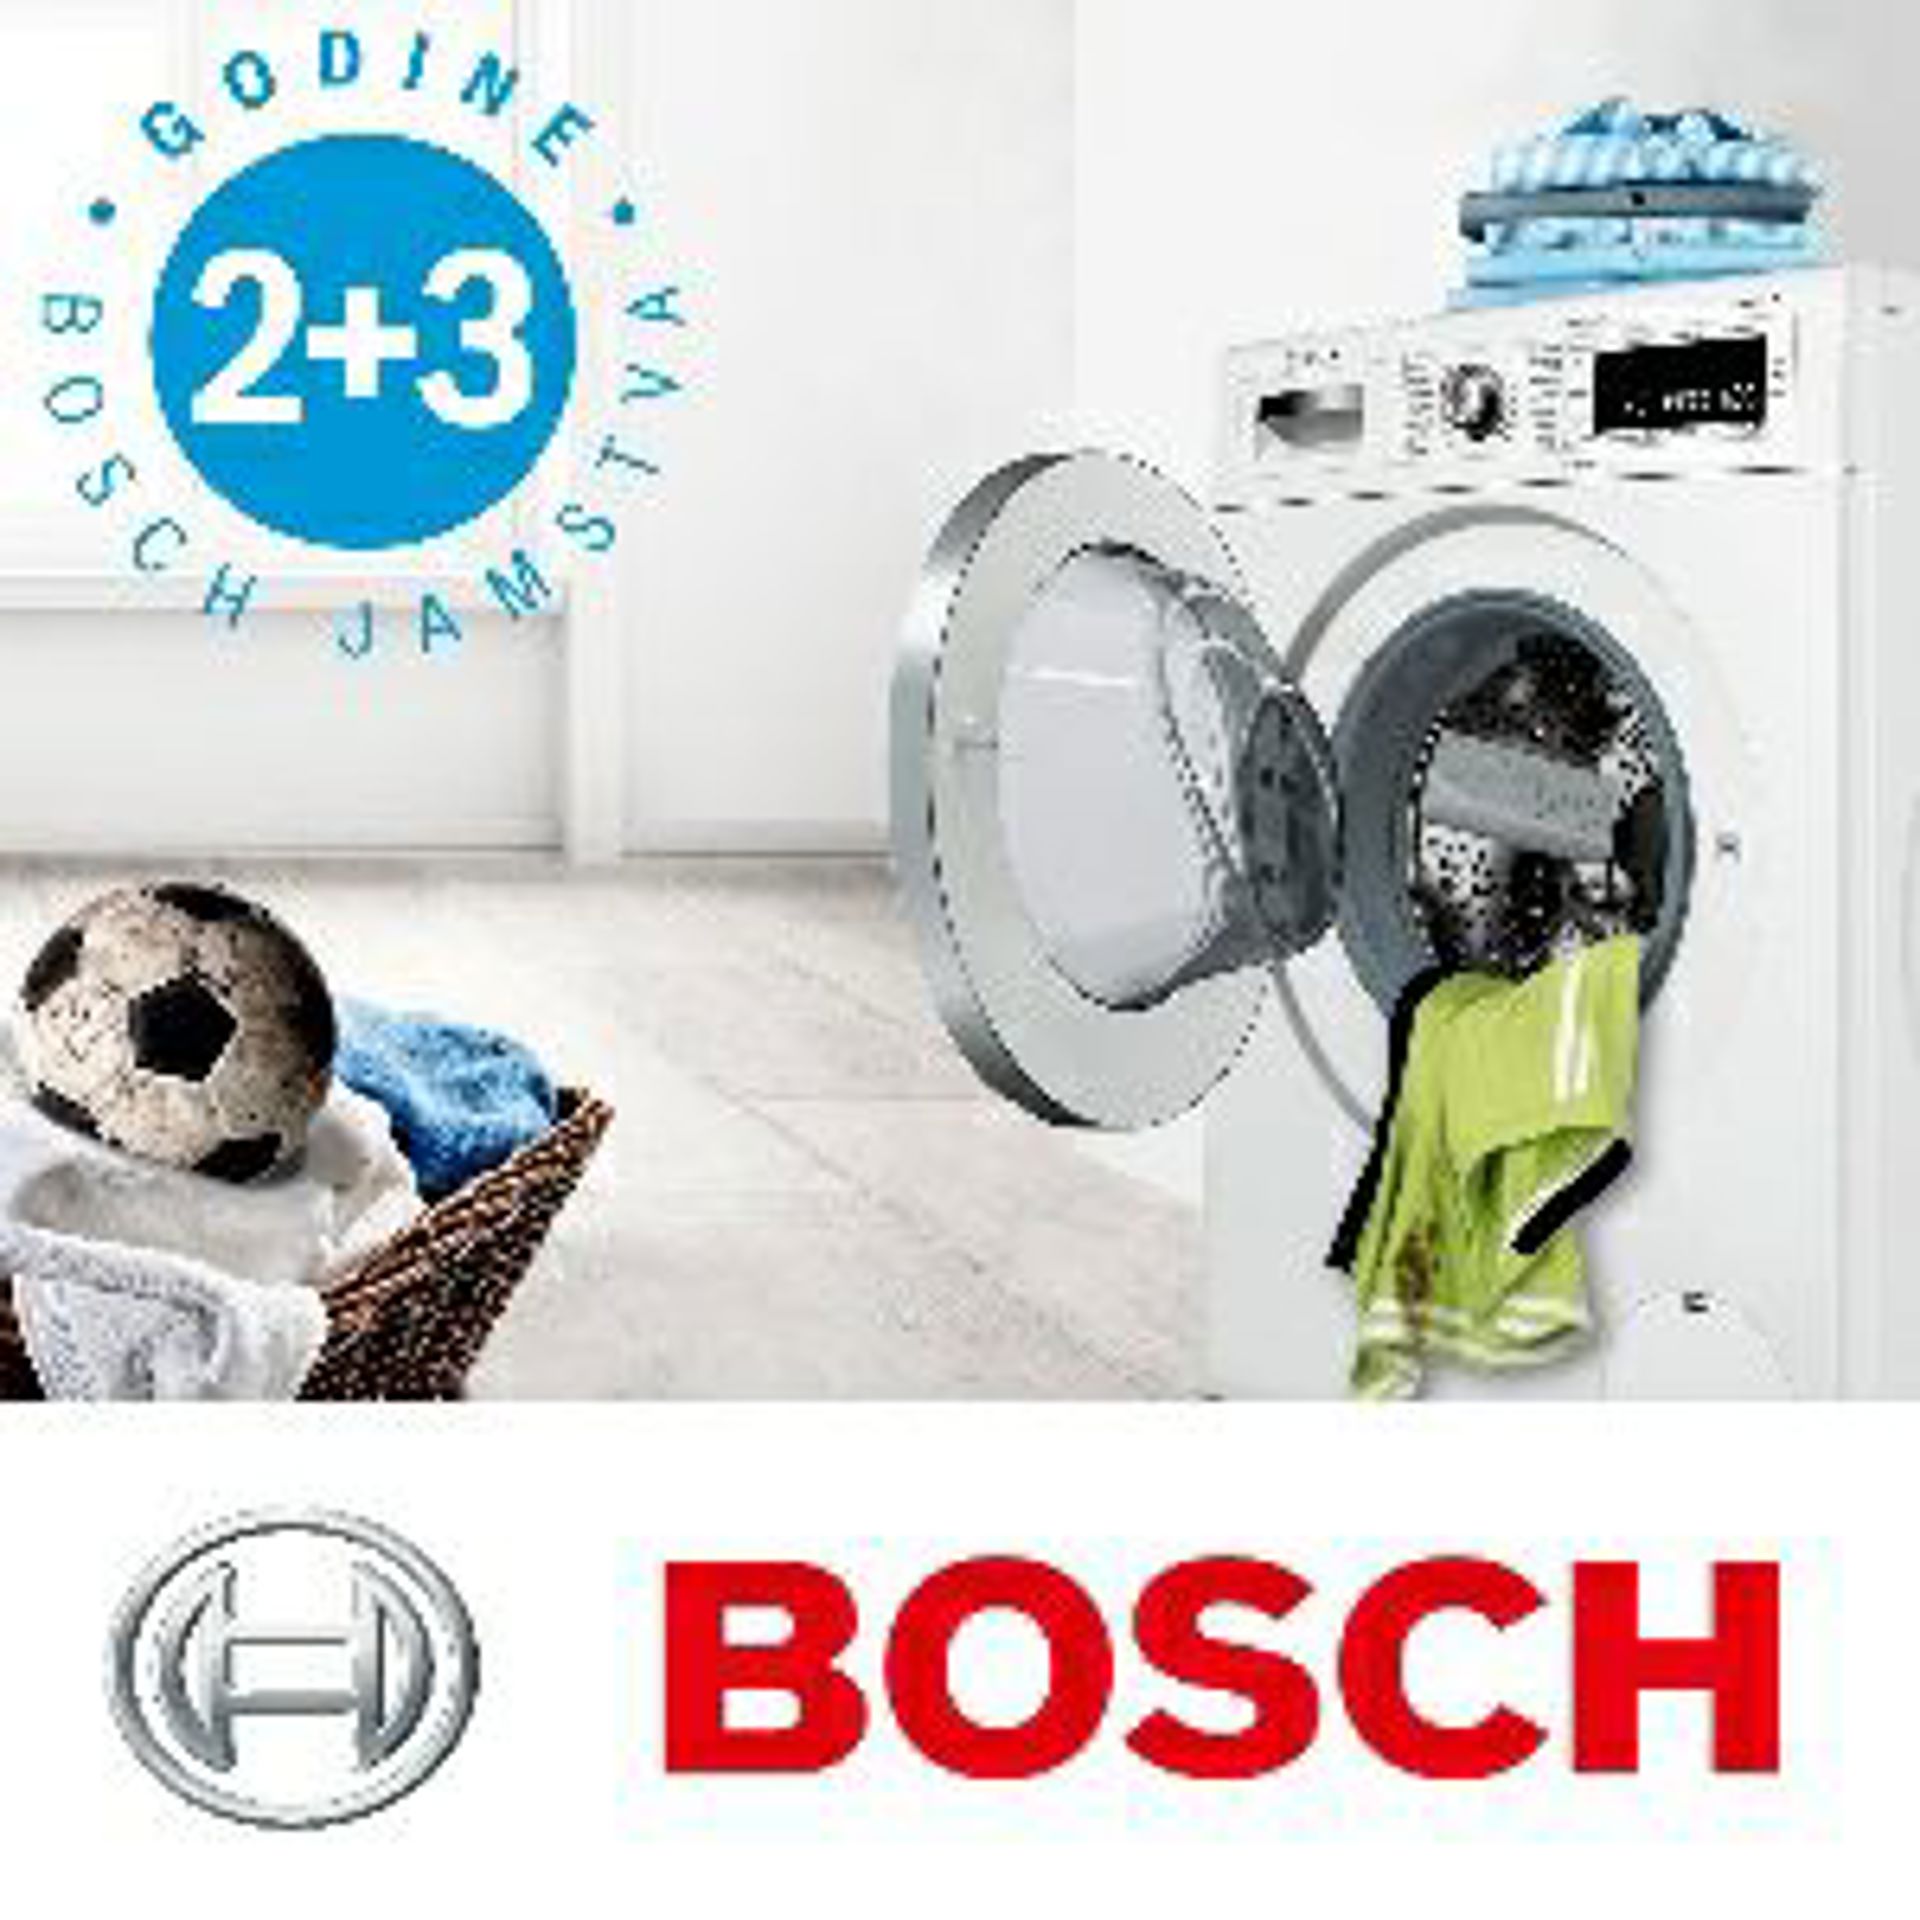 2 godine tvorničnog jamstva + 3 godine dodatnog jamstva na Bosch perilice rublja